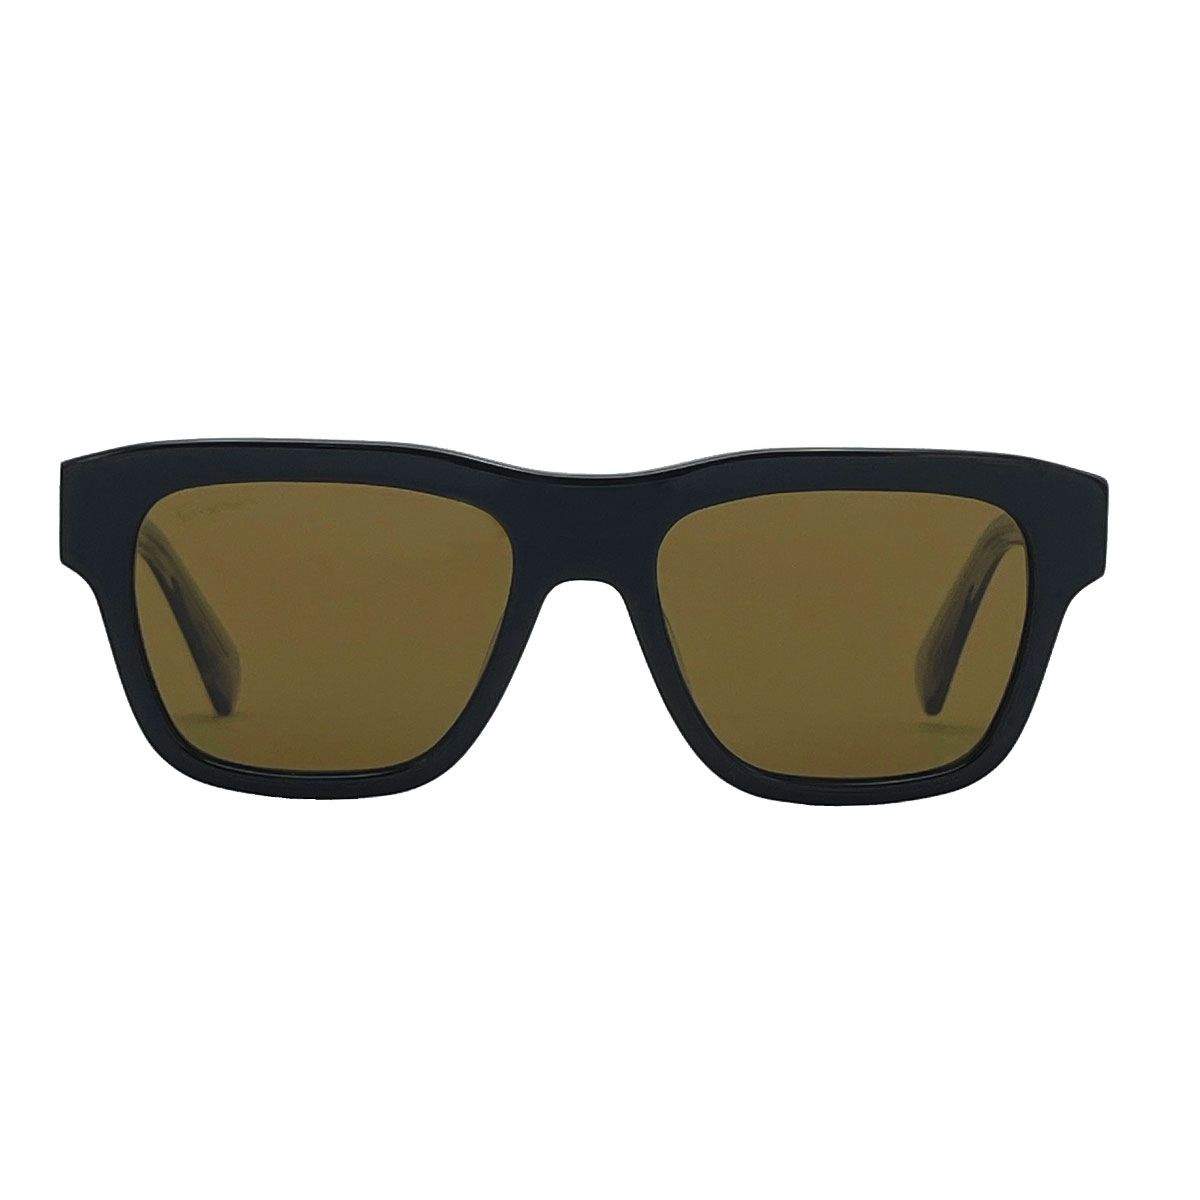 عینک آفتابی مردانه سالواتوره فراگامو مدل 51G087 - 746 -  - 2